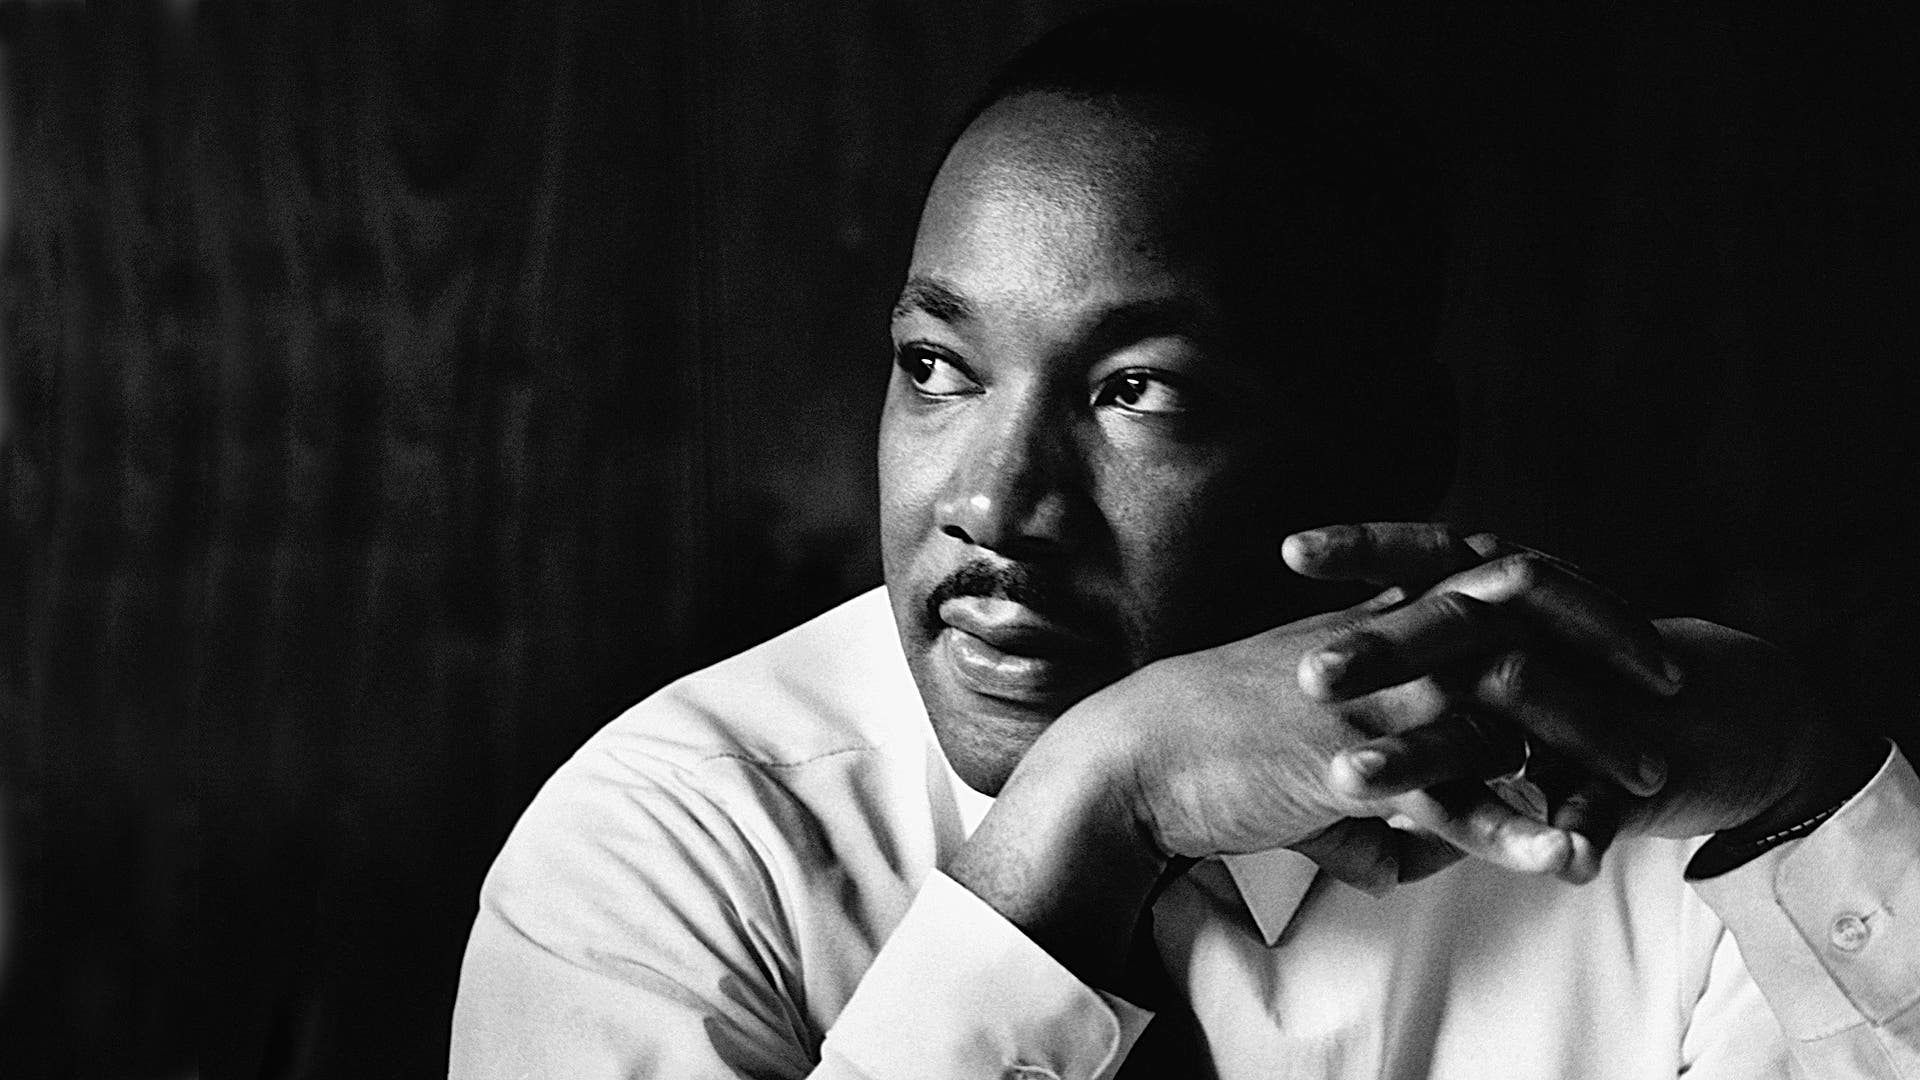 El último discurso de Martin Luther King resucita la lucha por la igualdad 50 años después